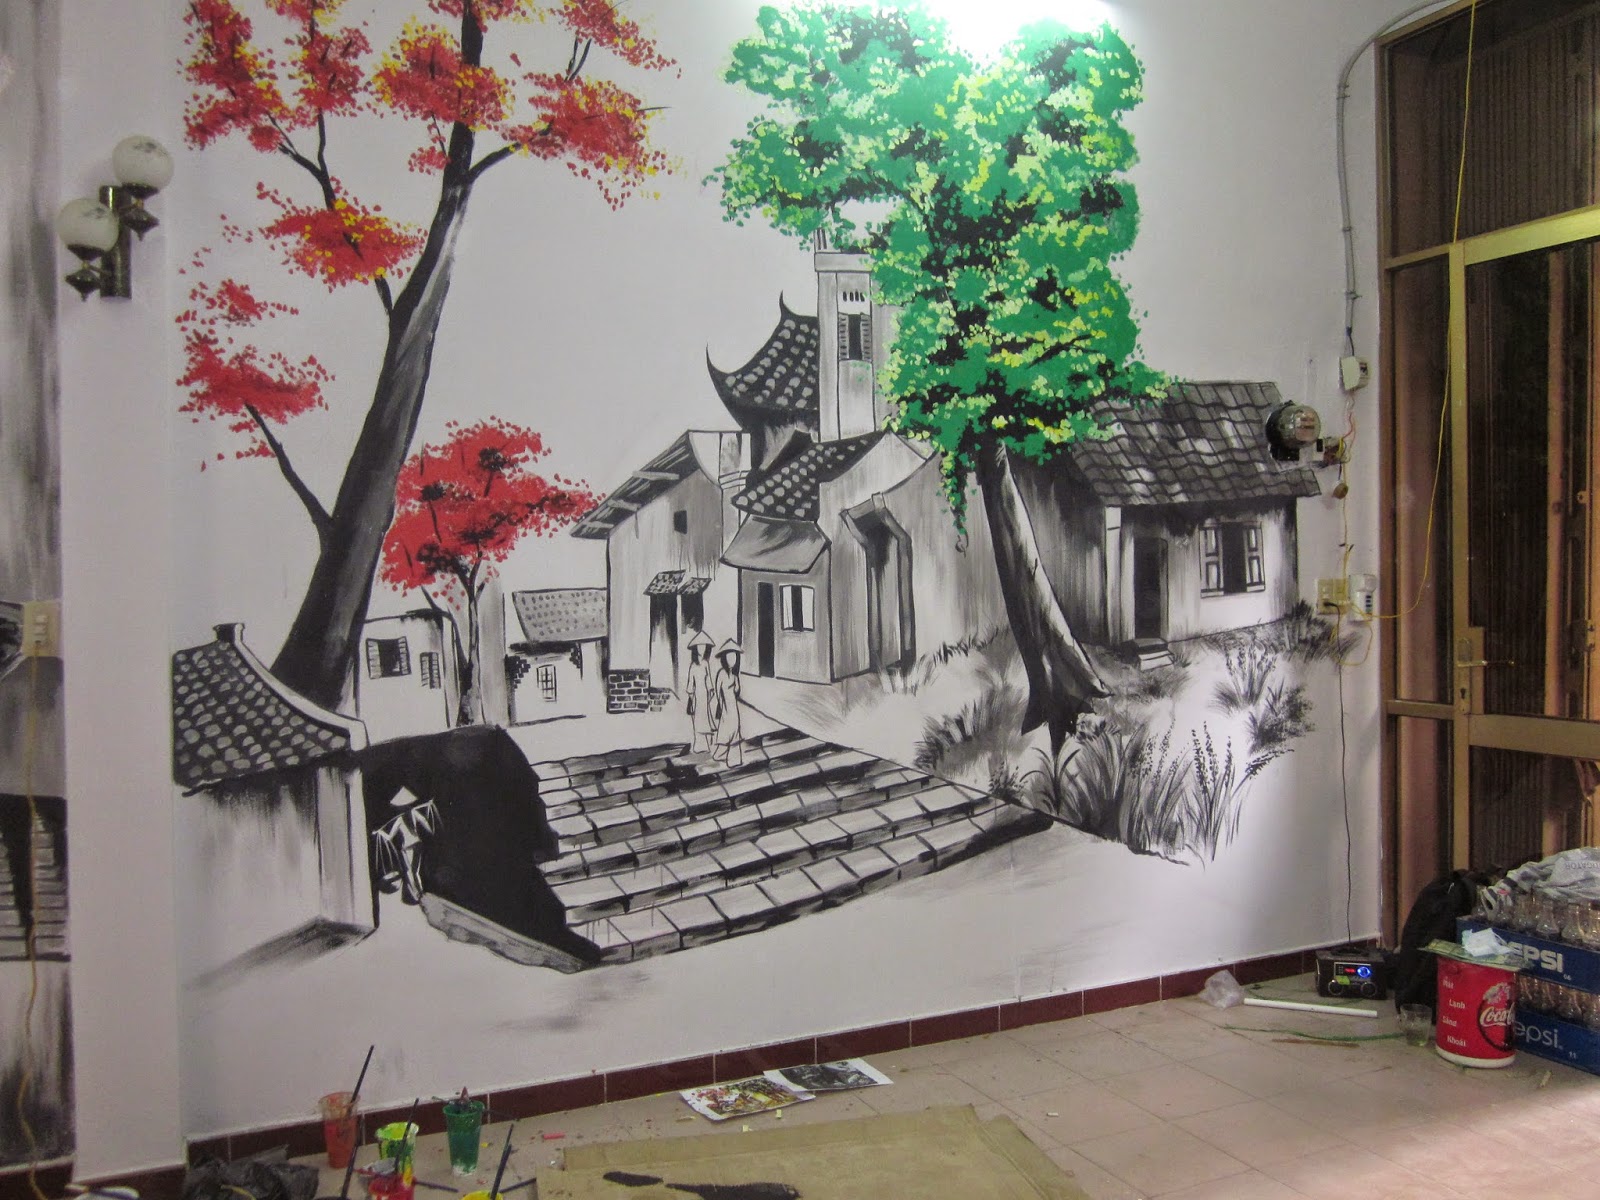 Tranh vẽ tường được nhiều người sử dụng trong các quán cafe